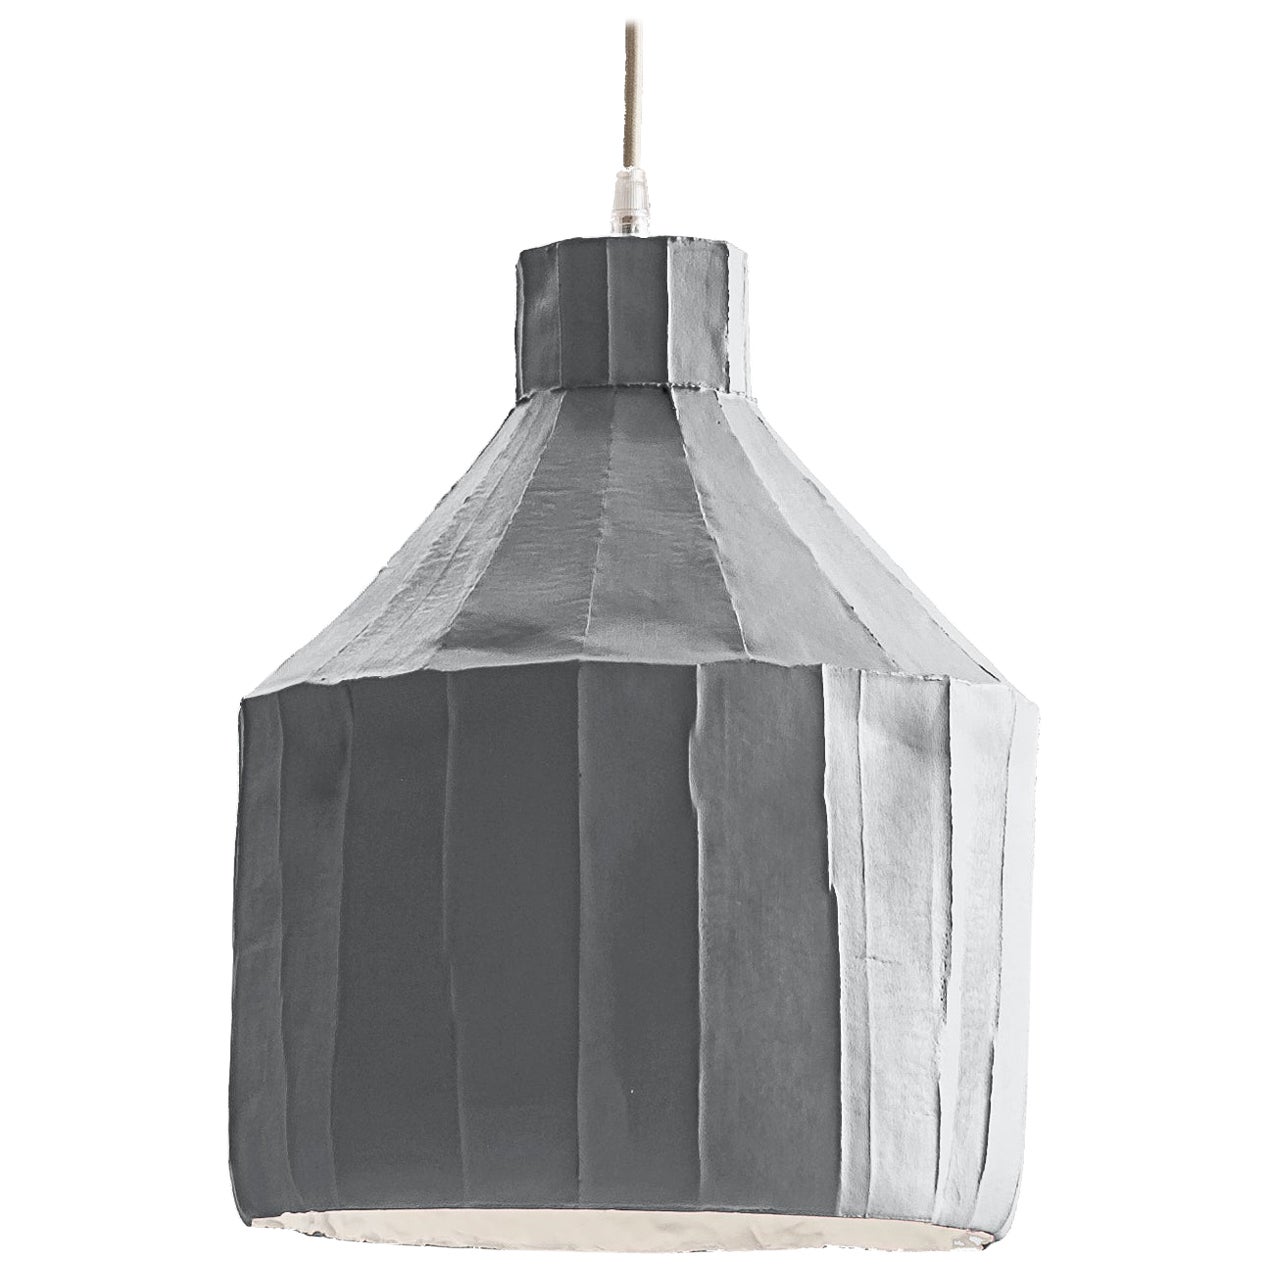 Zeitgenössische SUFI-Lampe aus grauer Keramik mit Corteccia-Textur